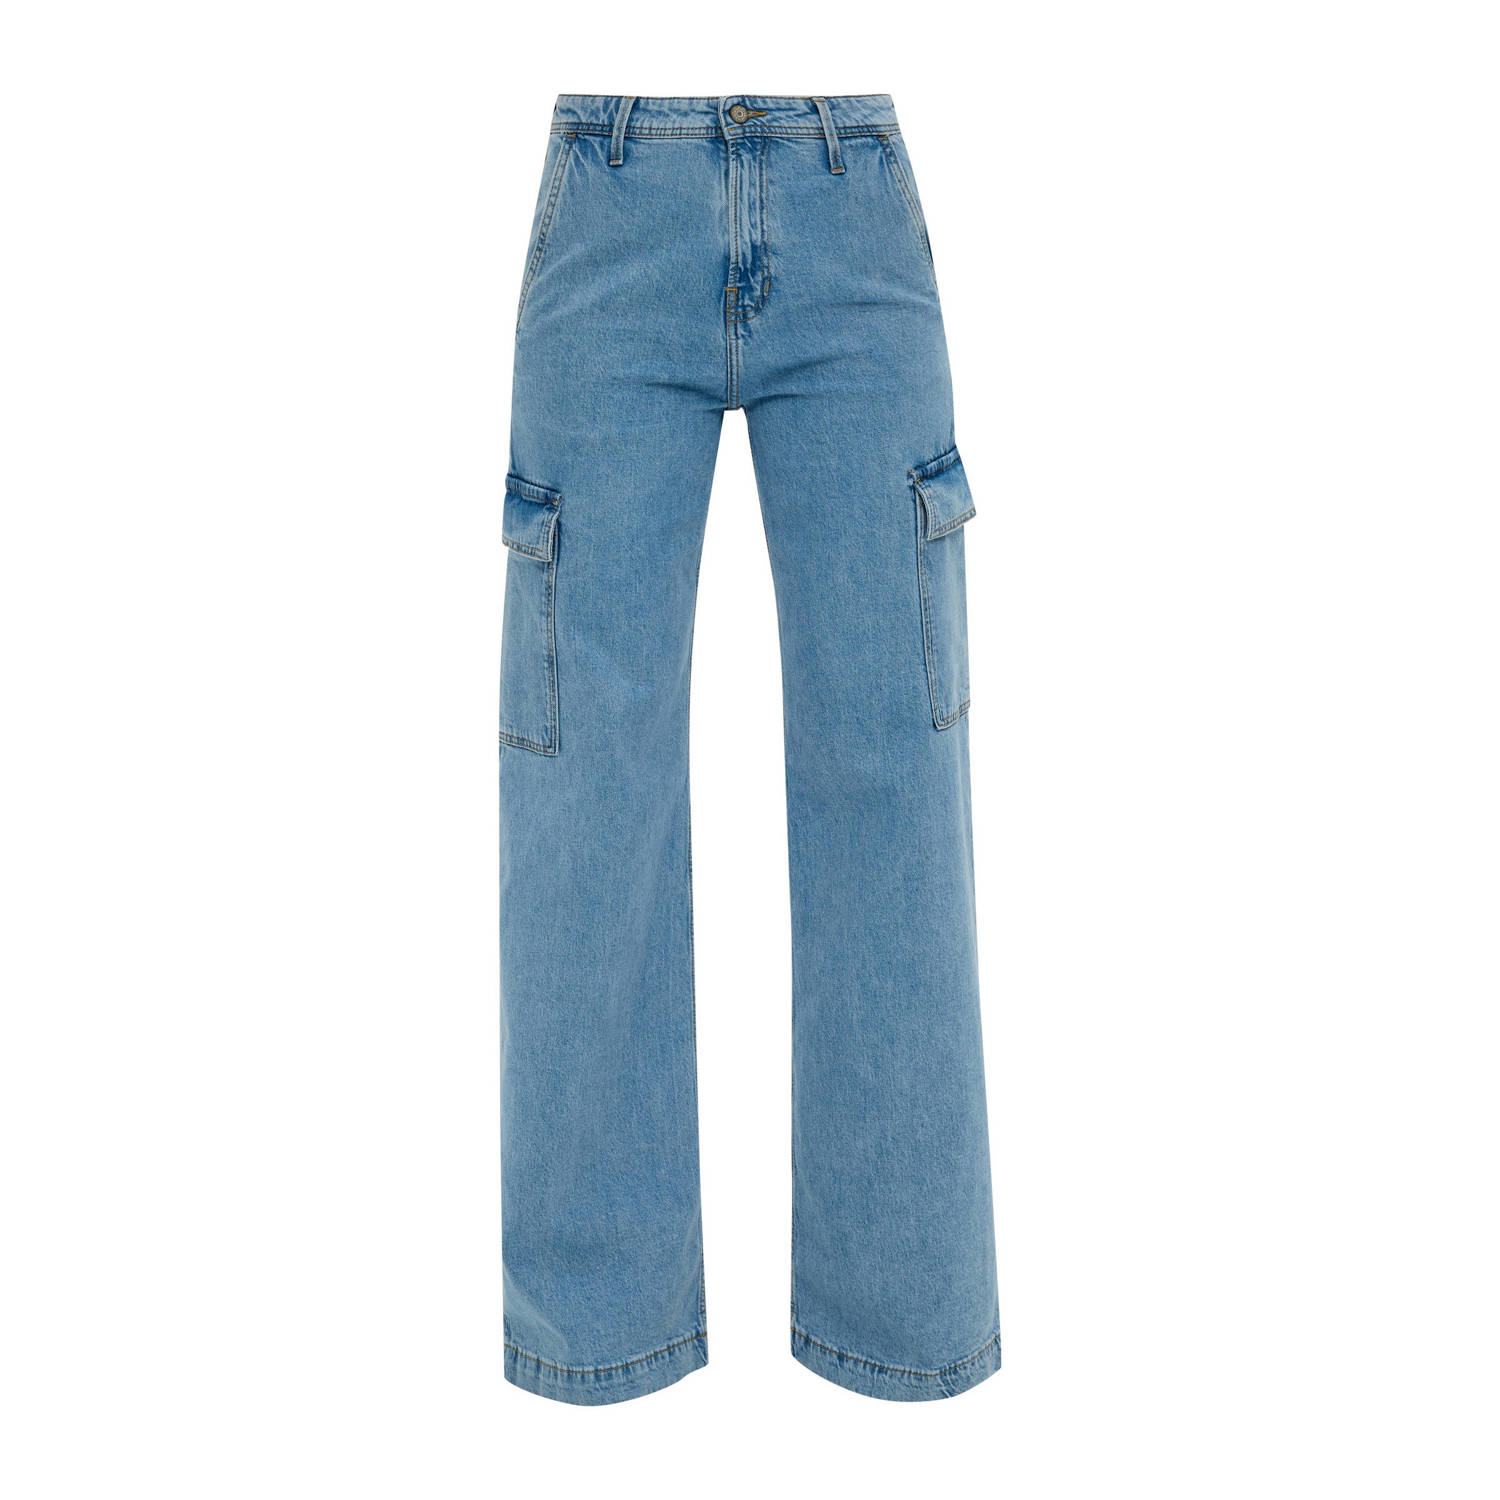 S.Oliver regular jeans light blue denim